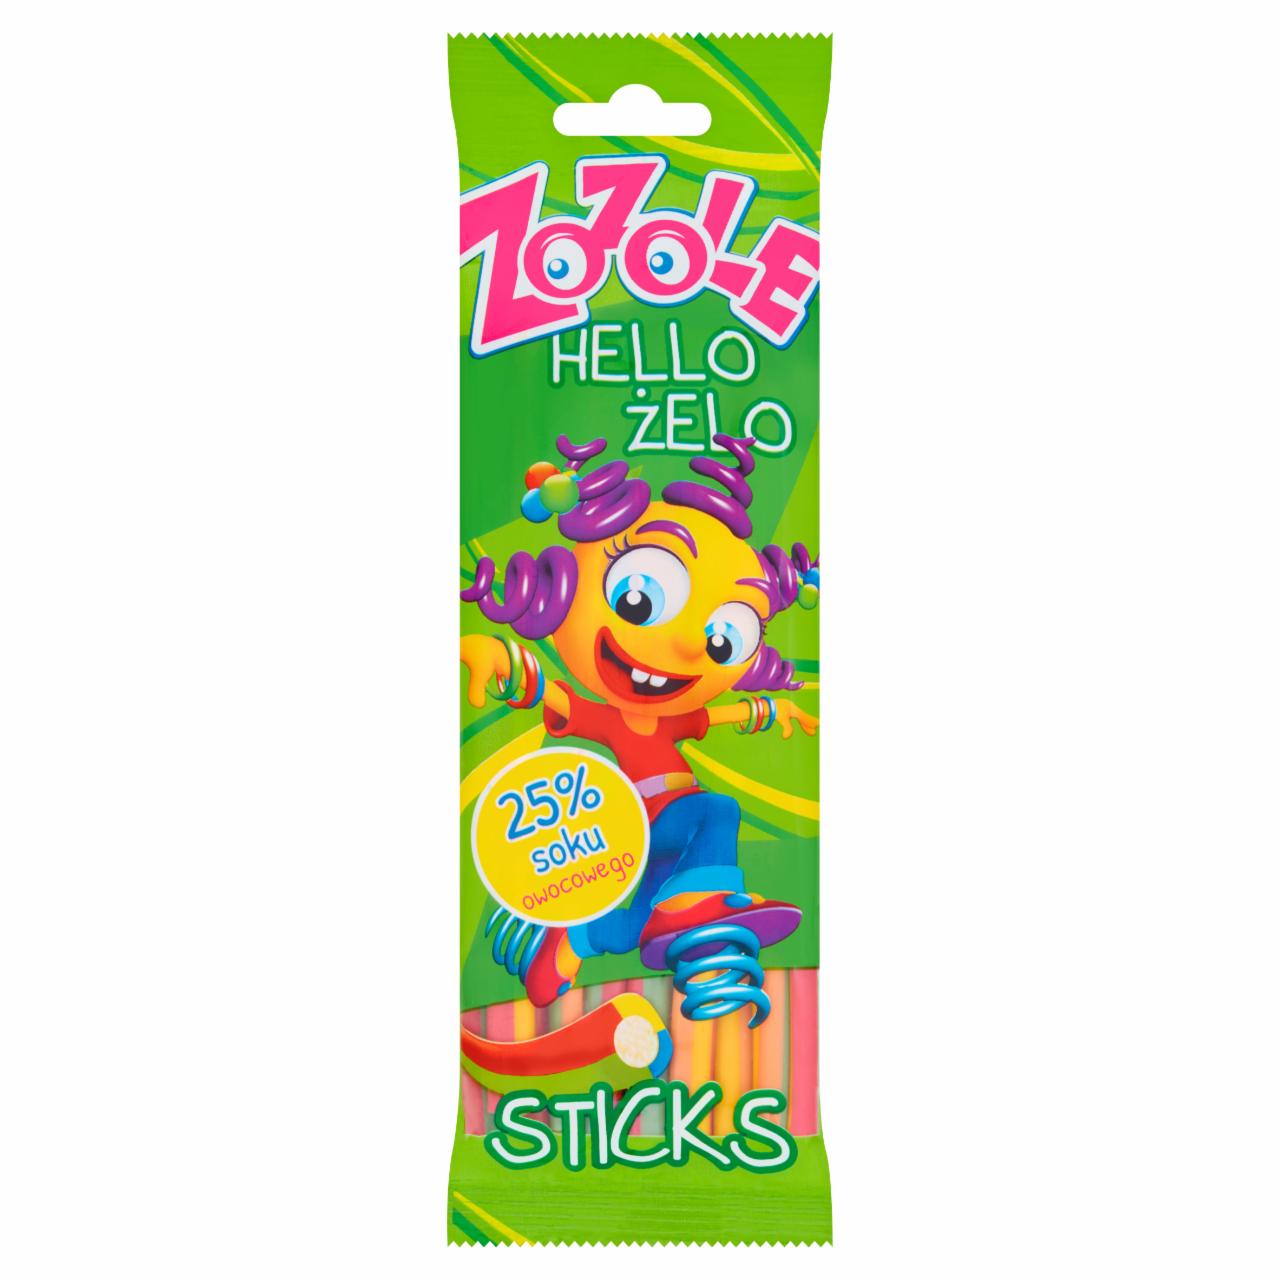 Zdjęcia - Hello Żelo Sticks Żelki o smaku owocowym 75 g Zozole